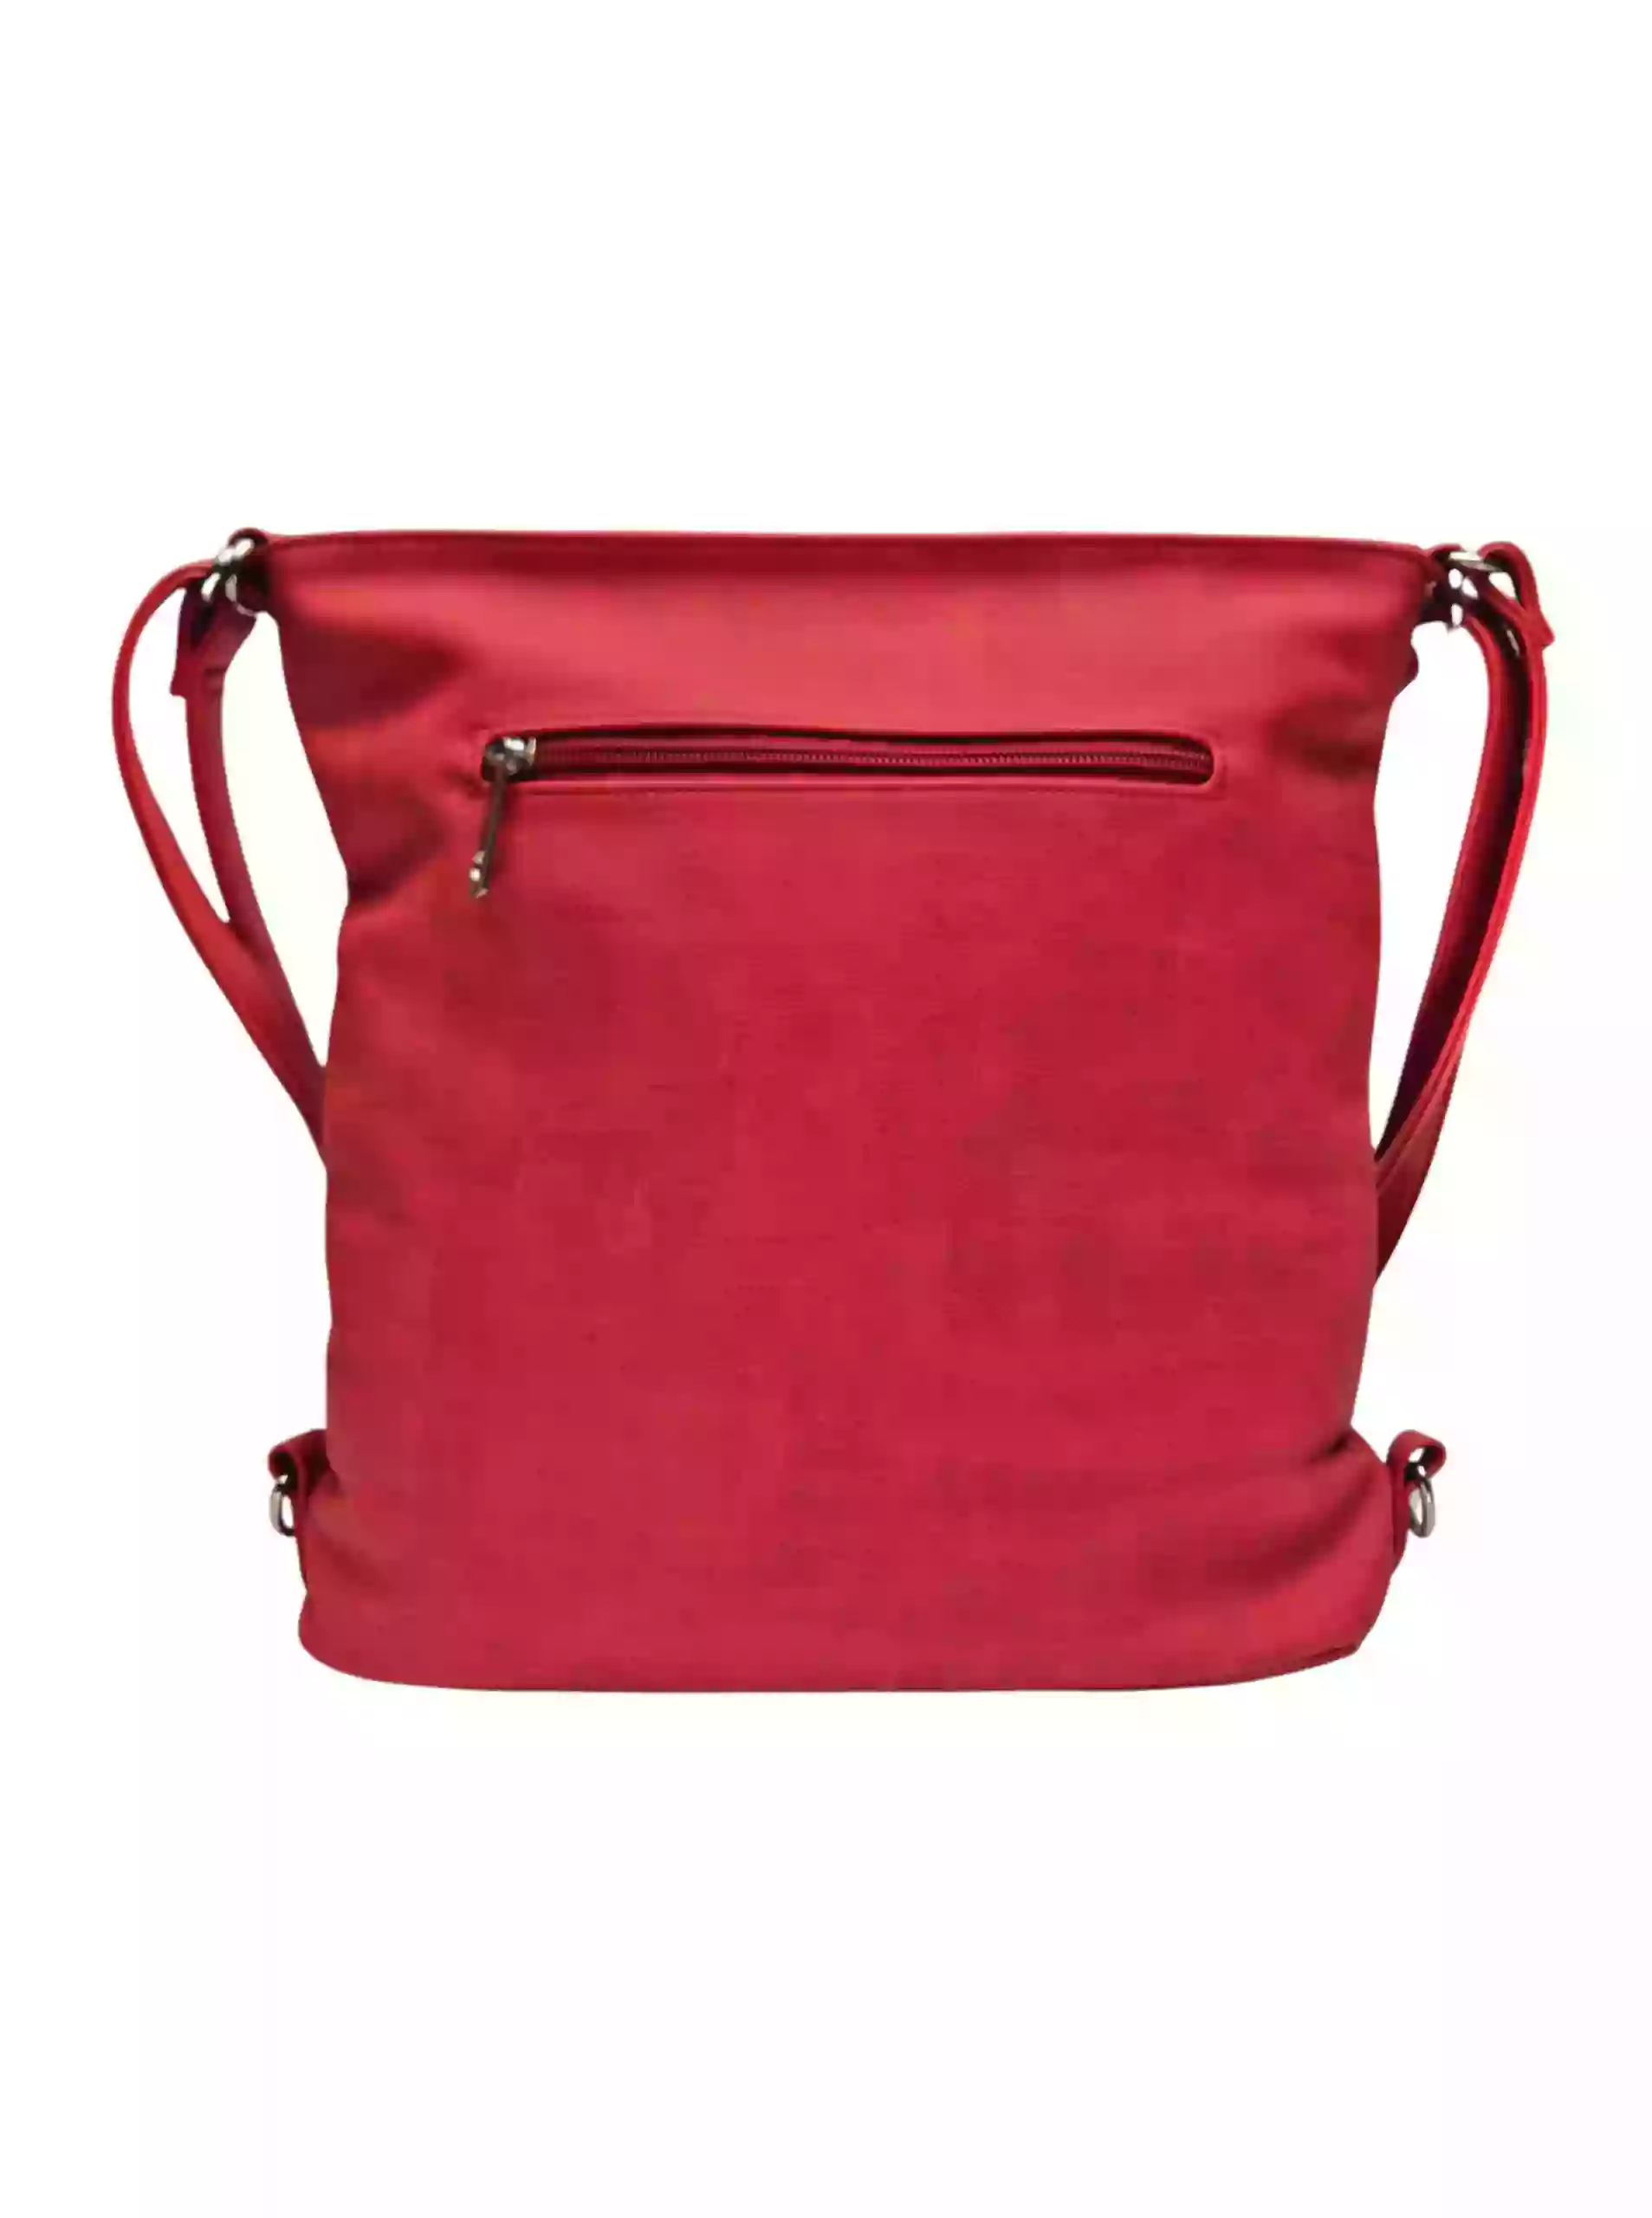 Střední červený kabelko-batoh 2v1 se slušivým šikmým zipem, Tapple, H190061, zadní strana kabelko-batohu